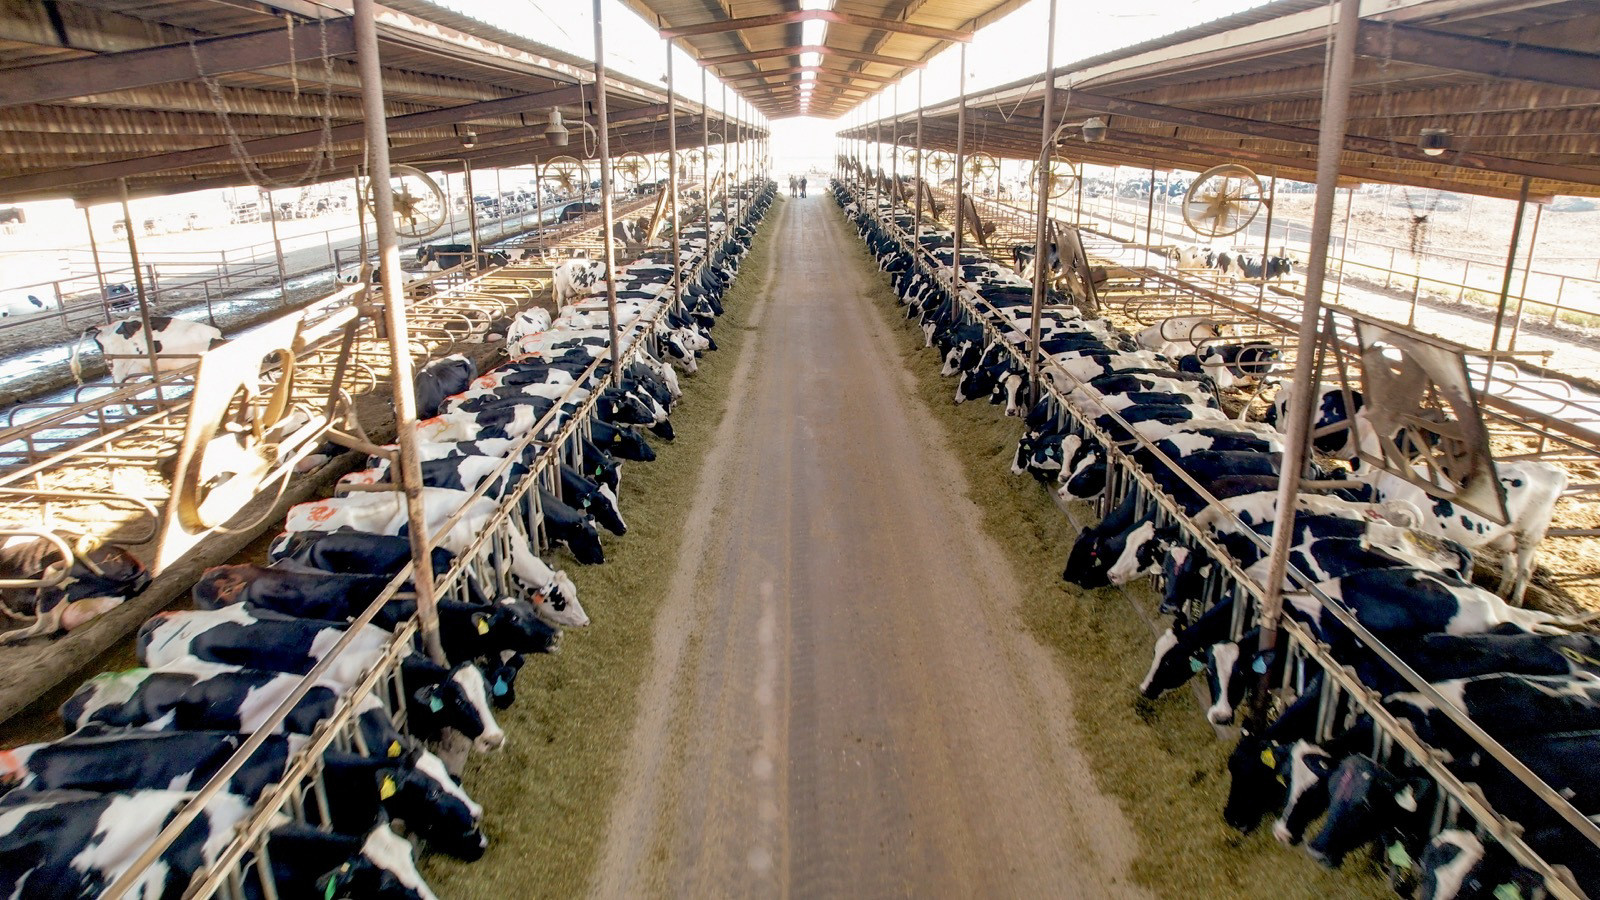 Владельцев молочных ферм призывают разводить продуктивных коров из-за роста цен на корма, приводящего к сокращению прибыли